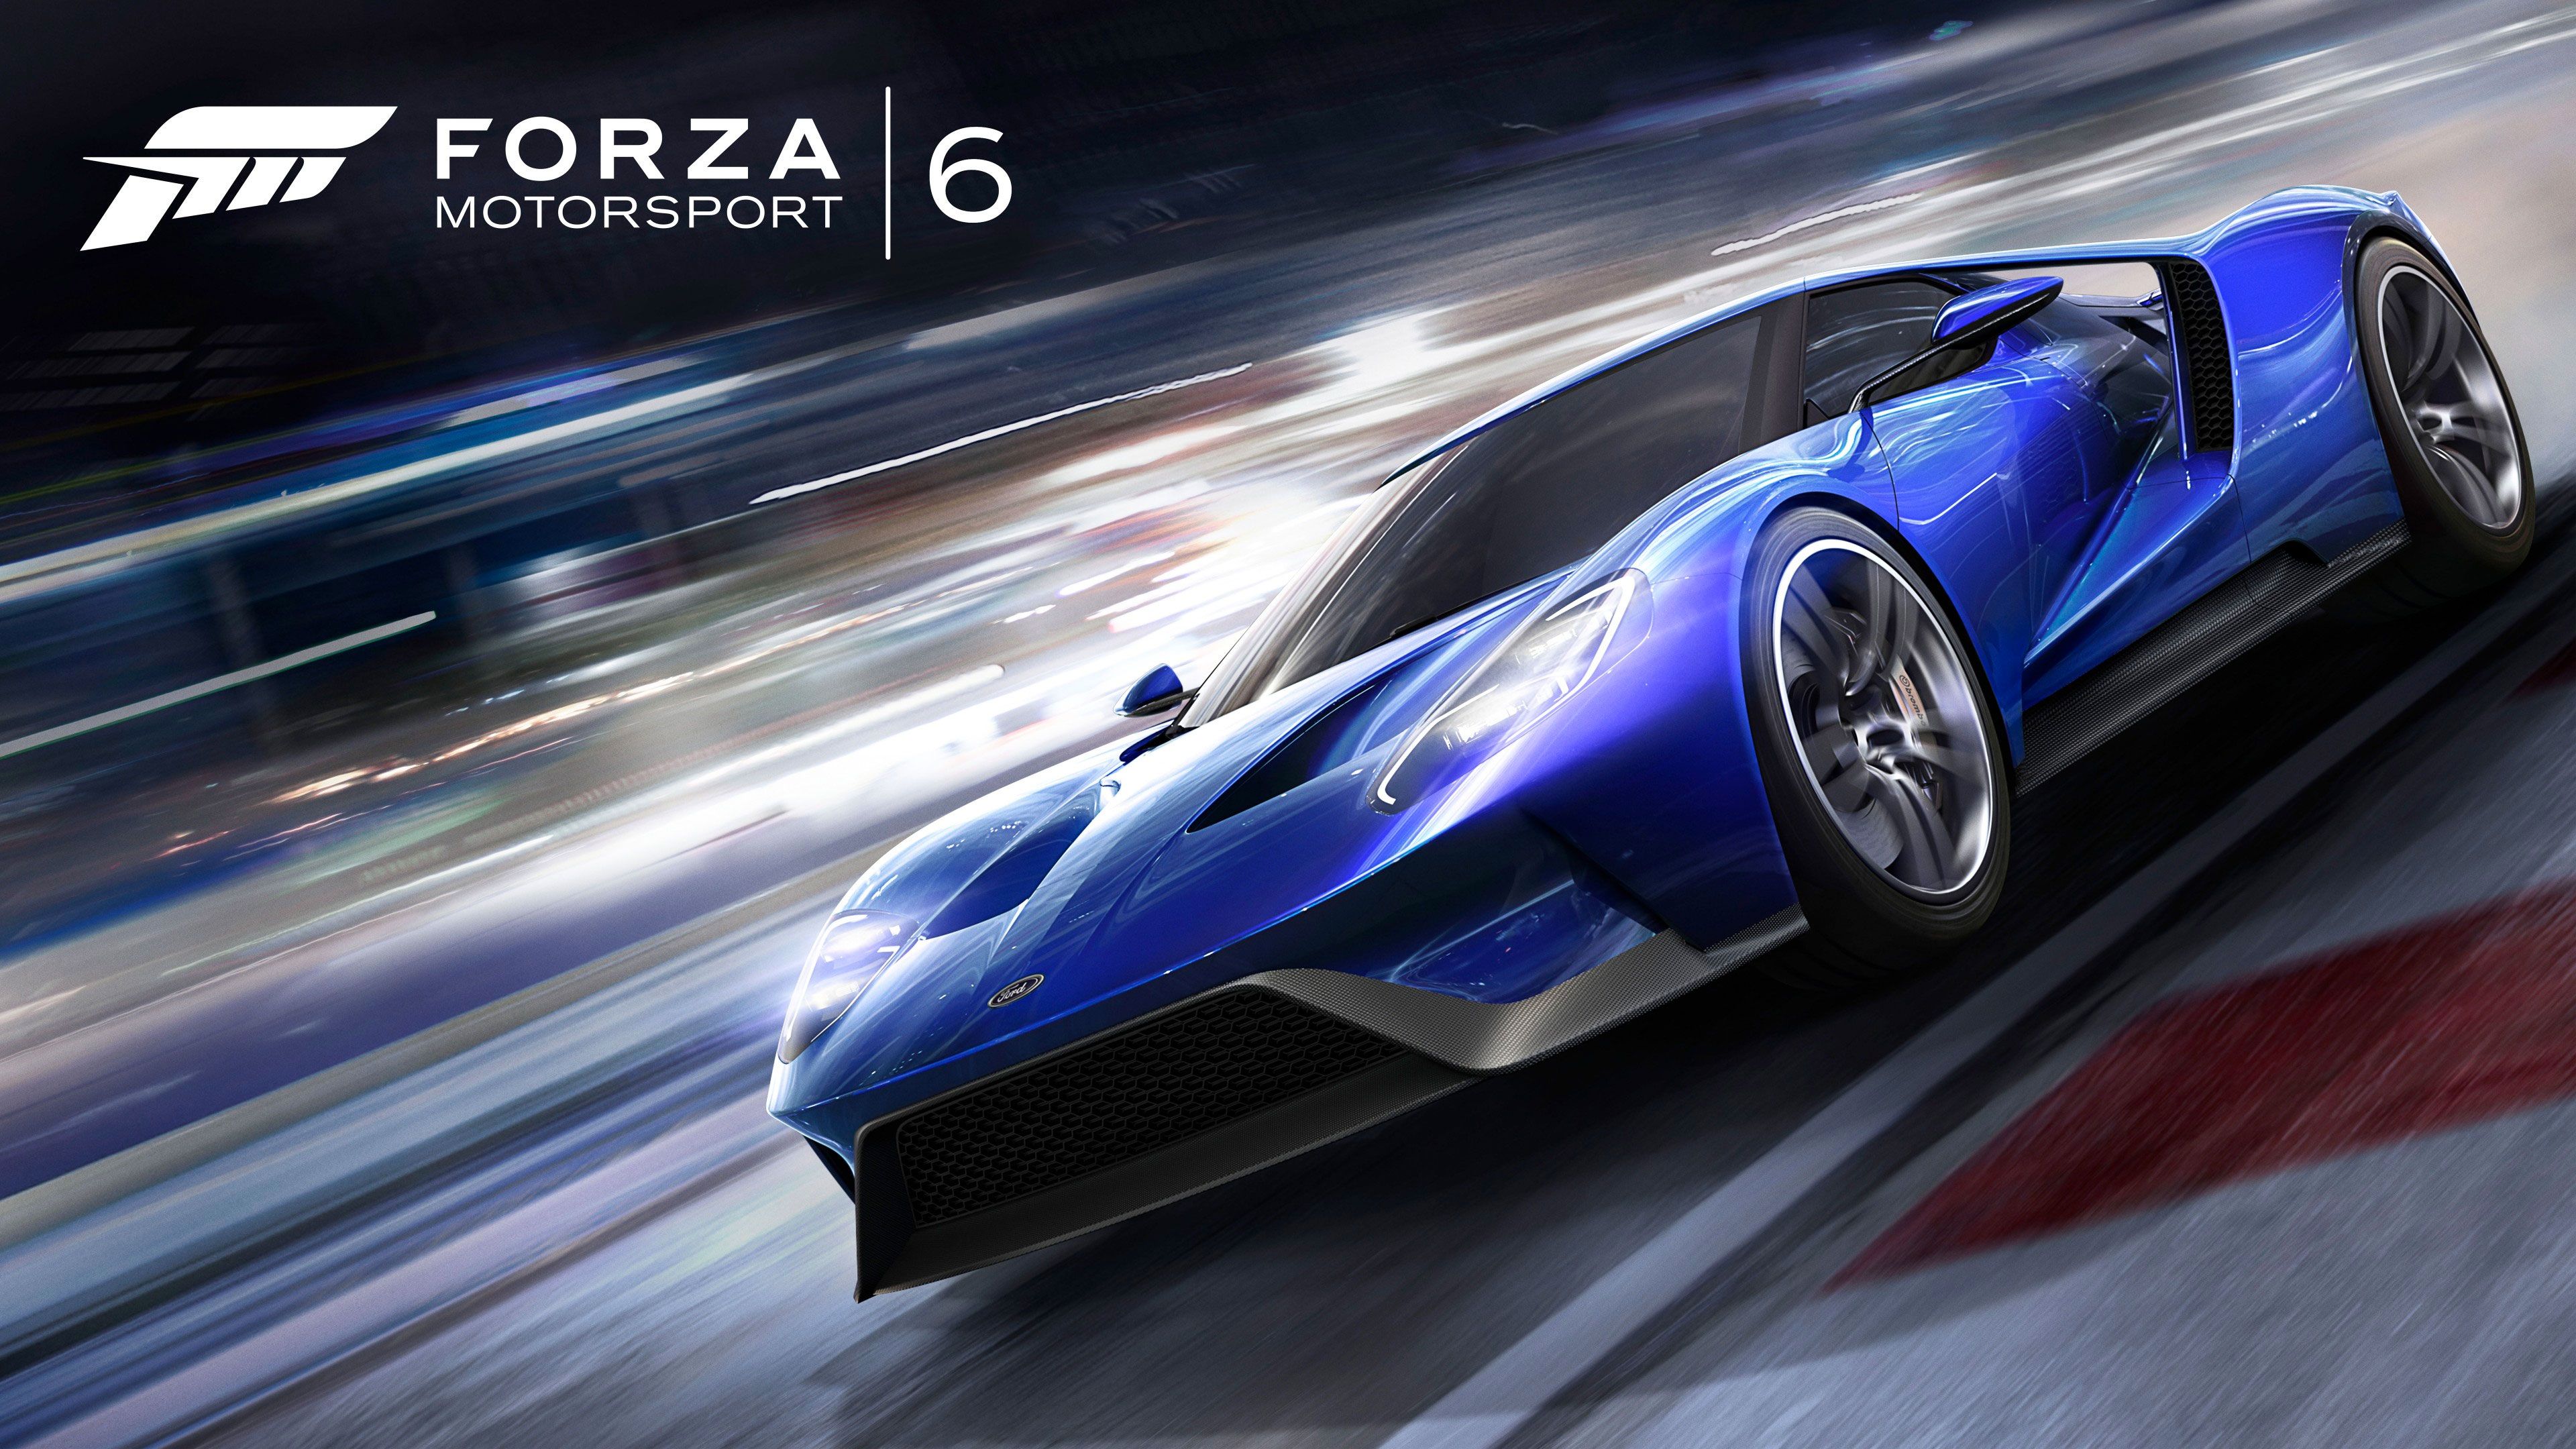 Forza Motorsport 6 Wallpaper in Ultra HDK